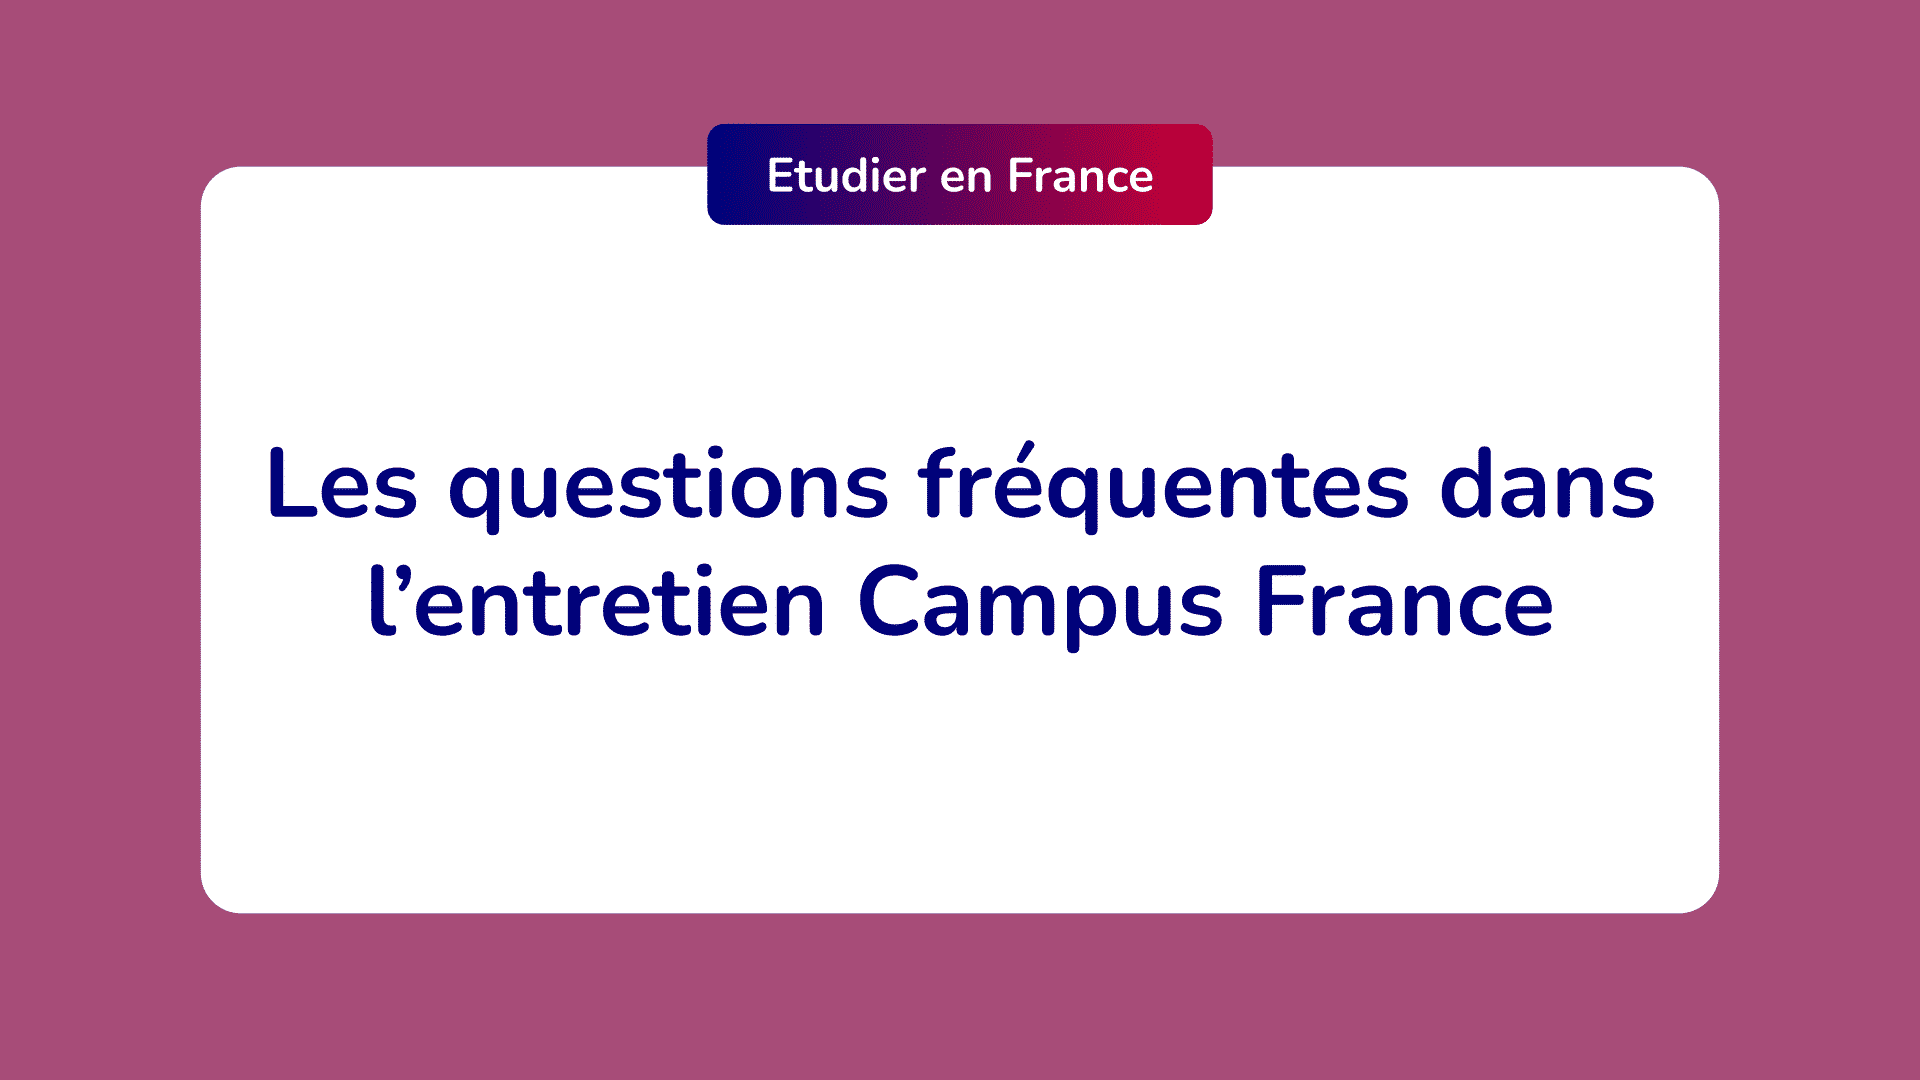 Les questions les plus fréquentes dans l’entretien Campus France